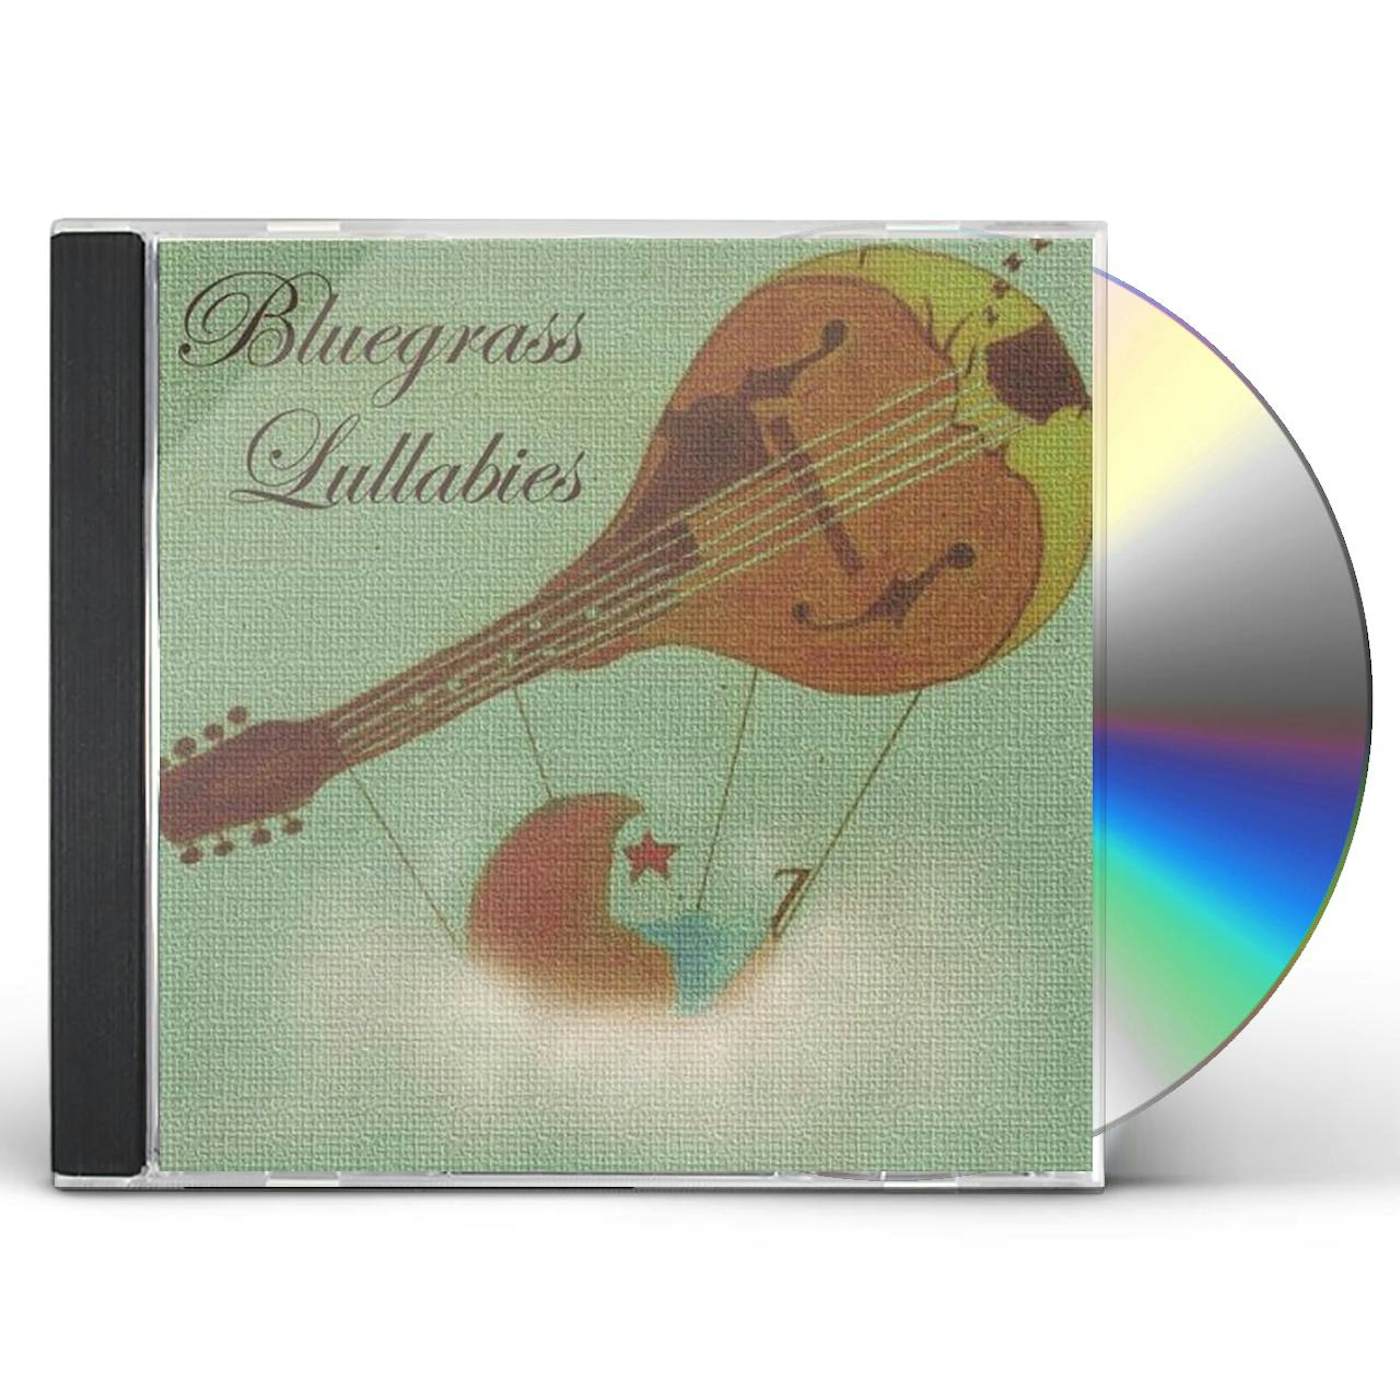 BLUEGRASS LULLABIES CD